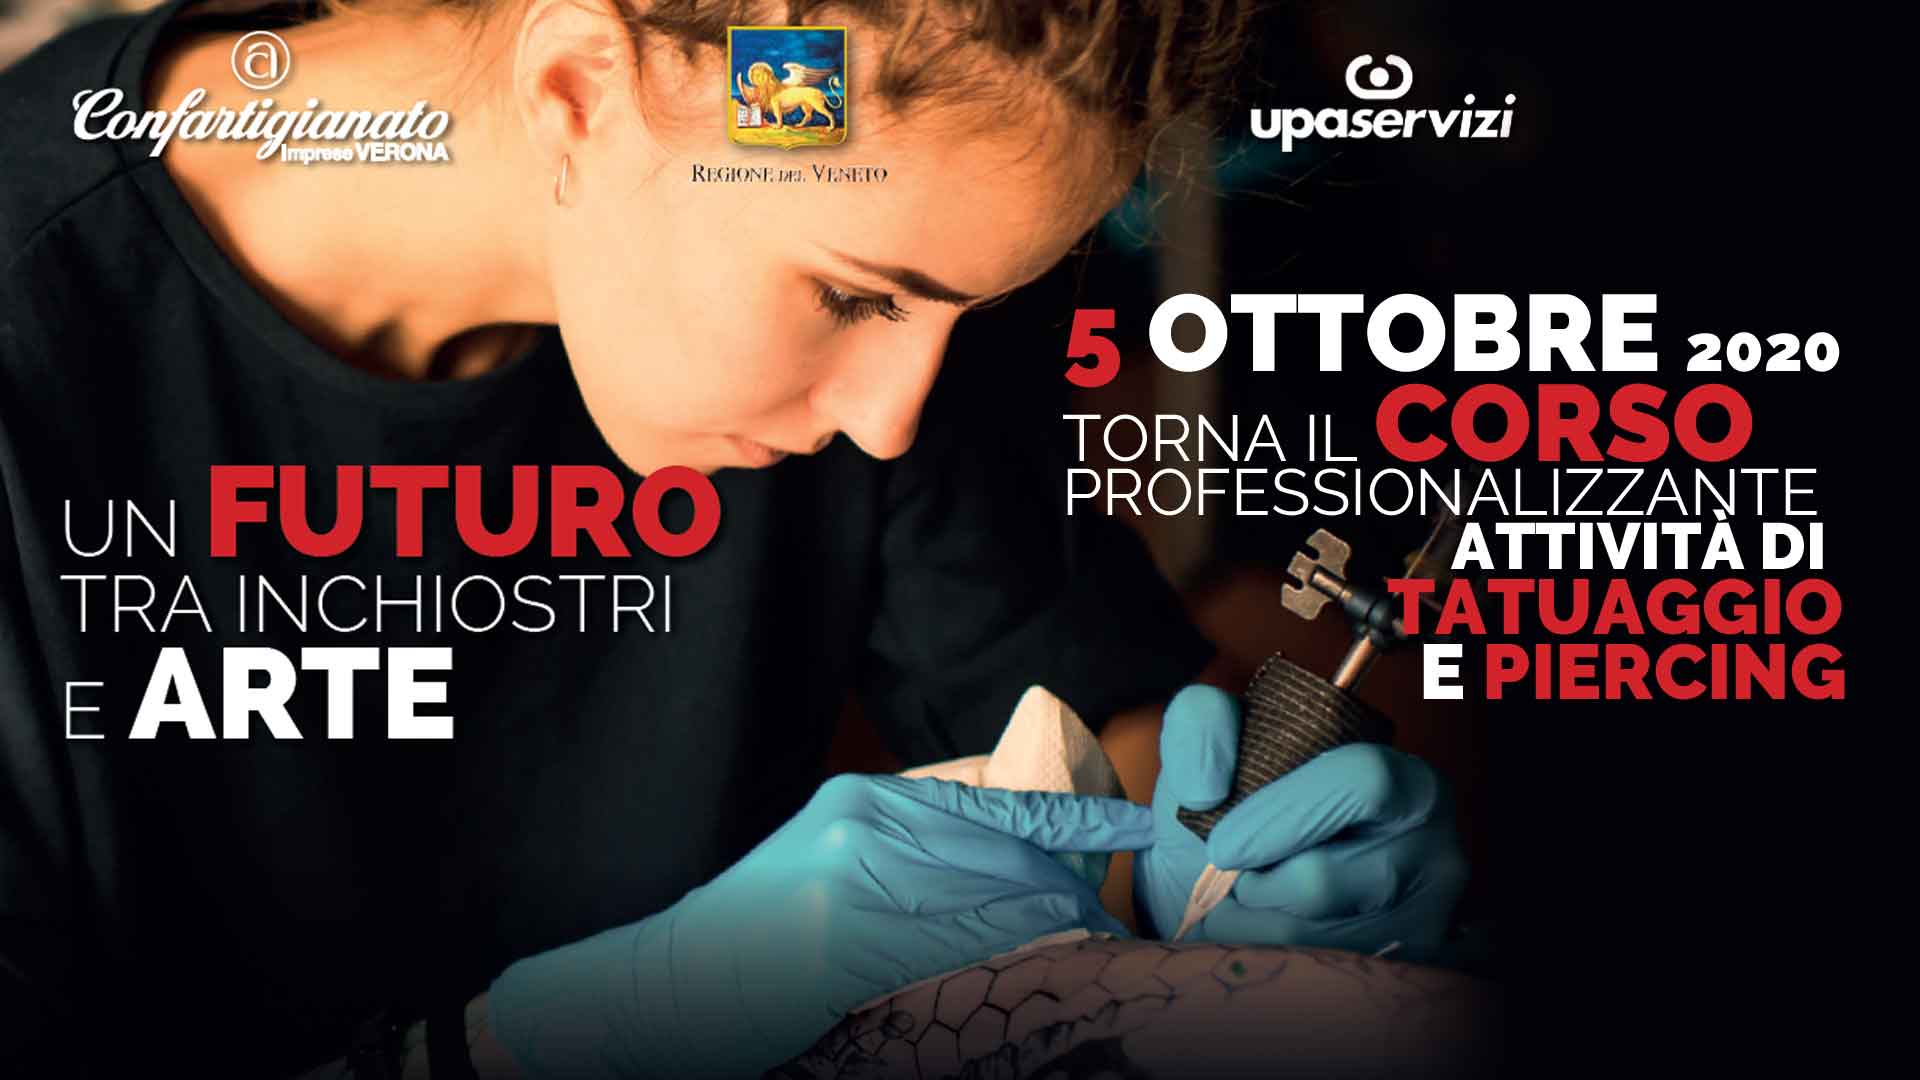 FORMAZIONE – Corso a riconoscimento regionale per abilitazione attività di Tatuaggio e Piercing: iscrizioni entro il 7 settembre